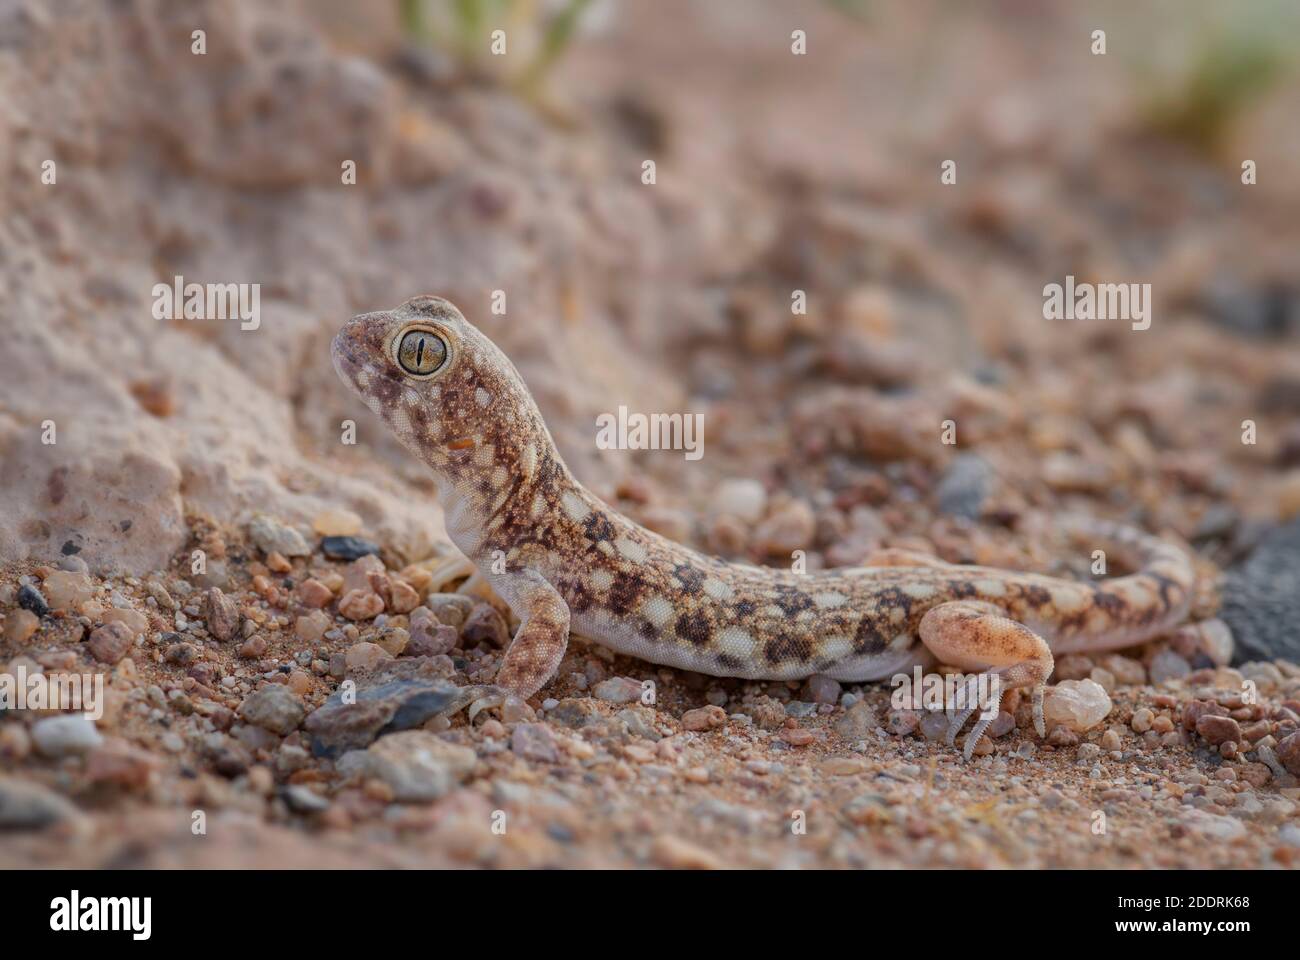 Kochs bellender Gecko - Ptenopus kochi, wunderschöne Eidechse aus der Wüste endemisch in Namibia. Stockfoto